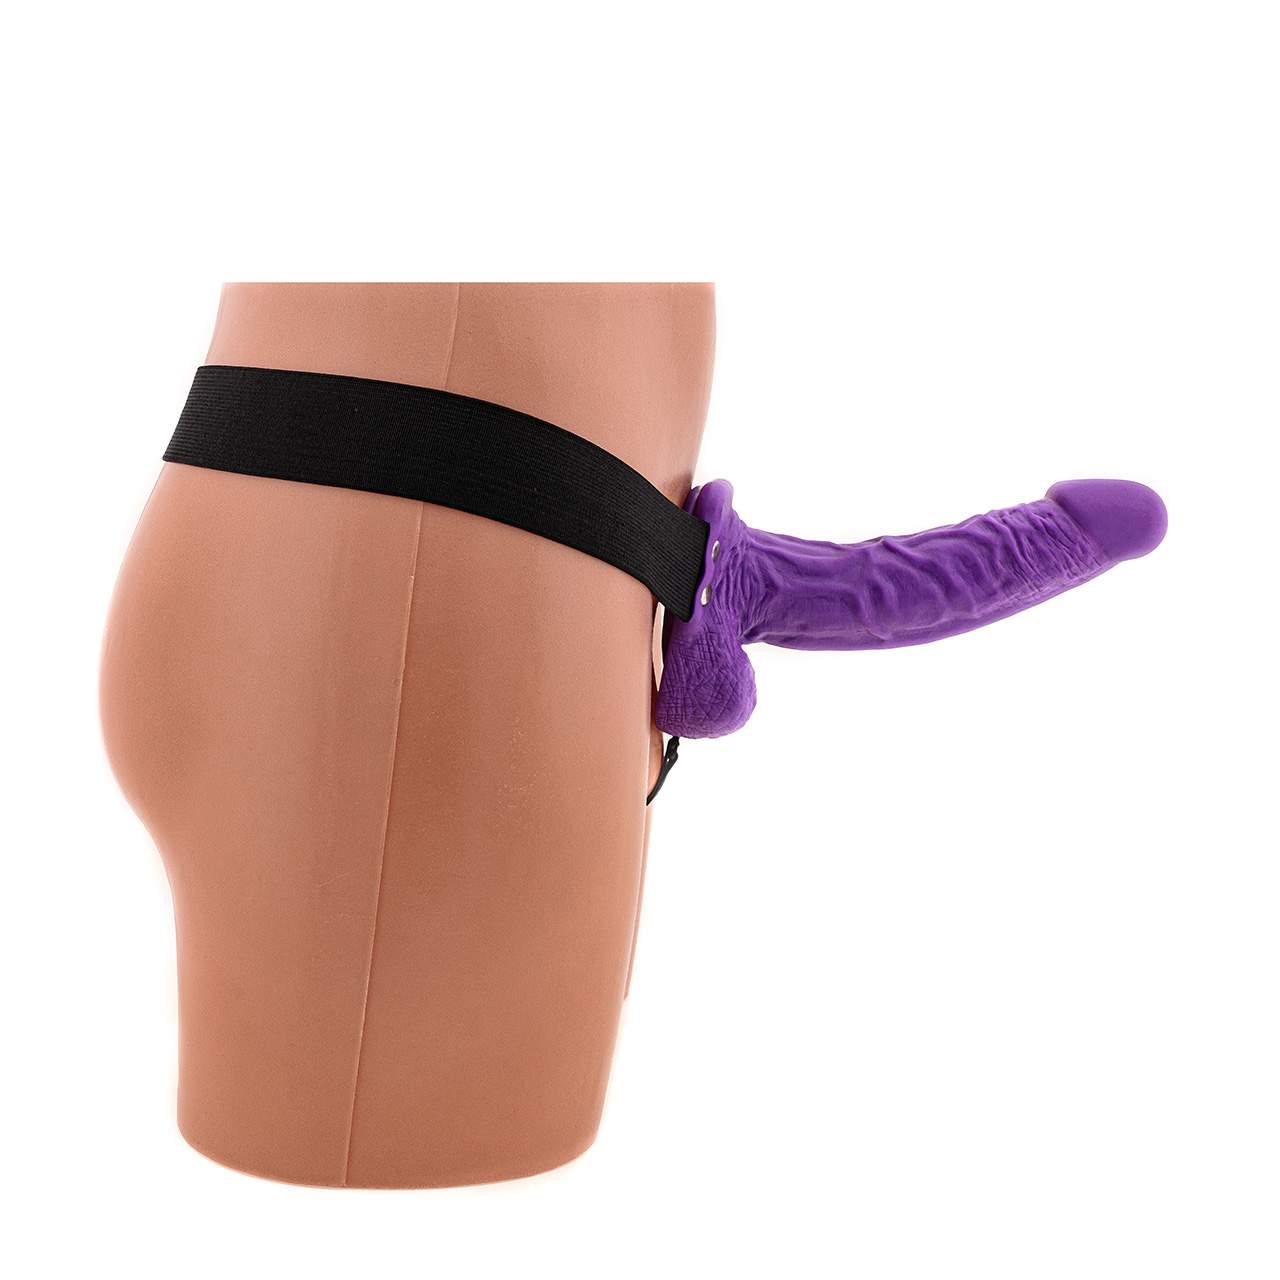 Fioletowa proteza penisa strap-on na gumce z jądrami i realnymi wypustkami 